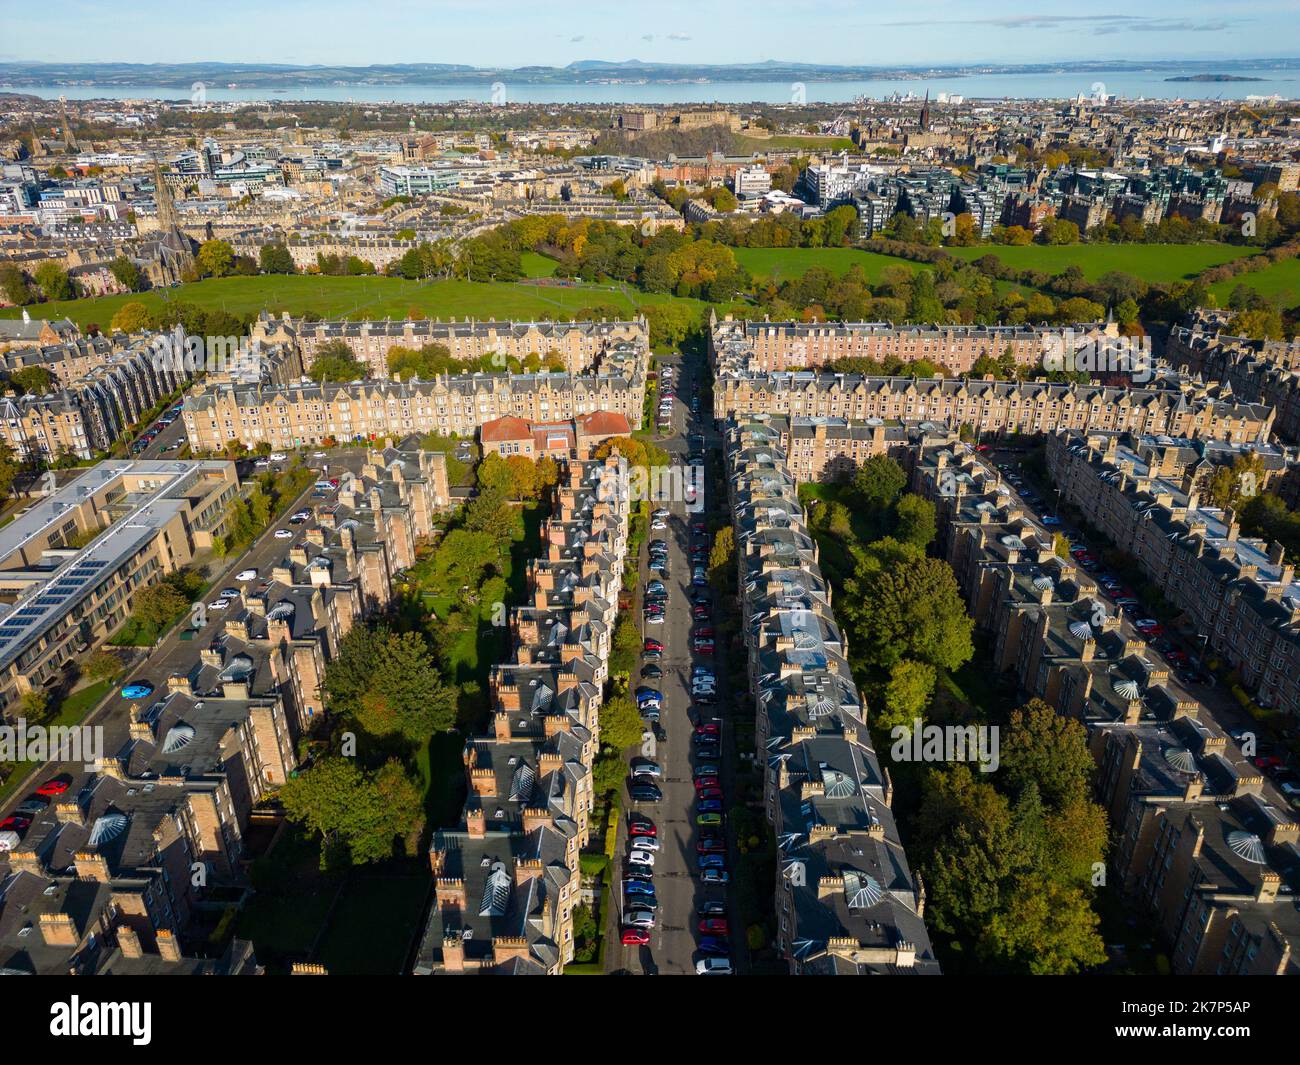 Vue aérienne des maisons de résidence dans le quartier résidentiel haut de gamme de Marchmont à Édimbourg, Écosse, Royaume-Uni Banque D'Images